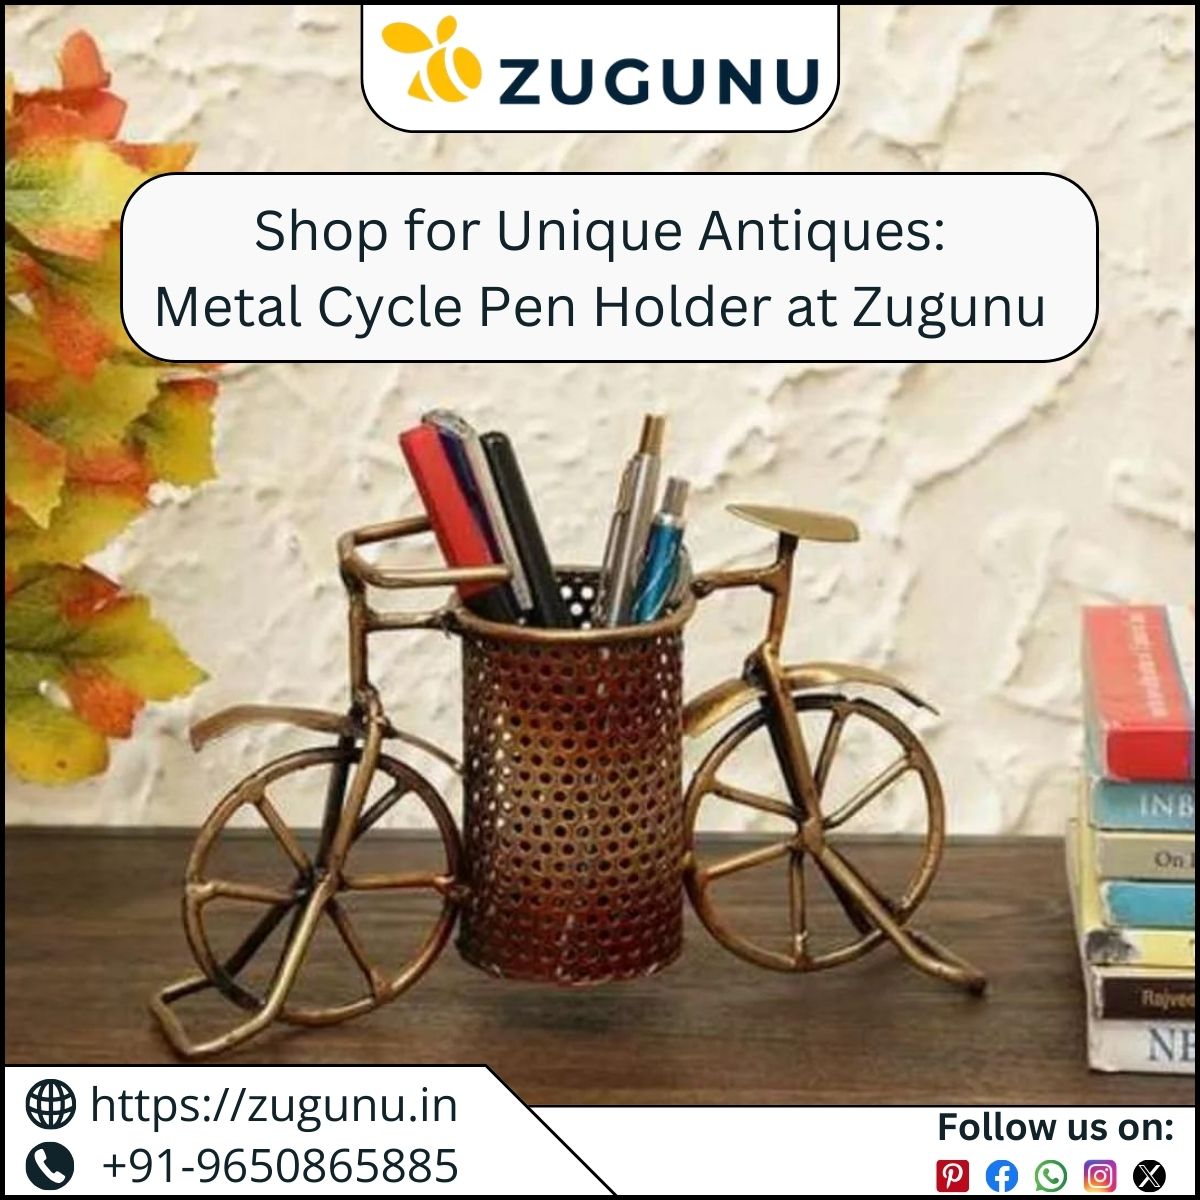 Shop for Unique Antiques Metal Cycle Pen Holder at Zugunu